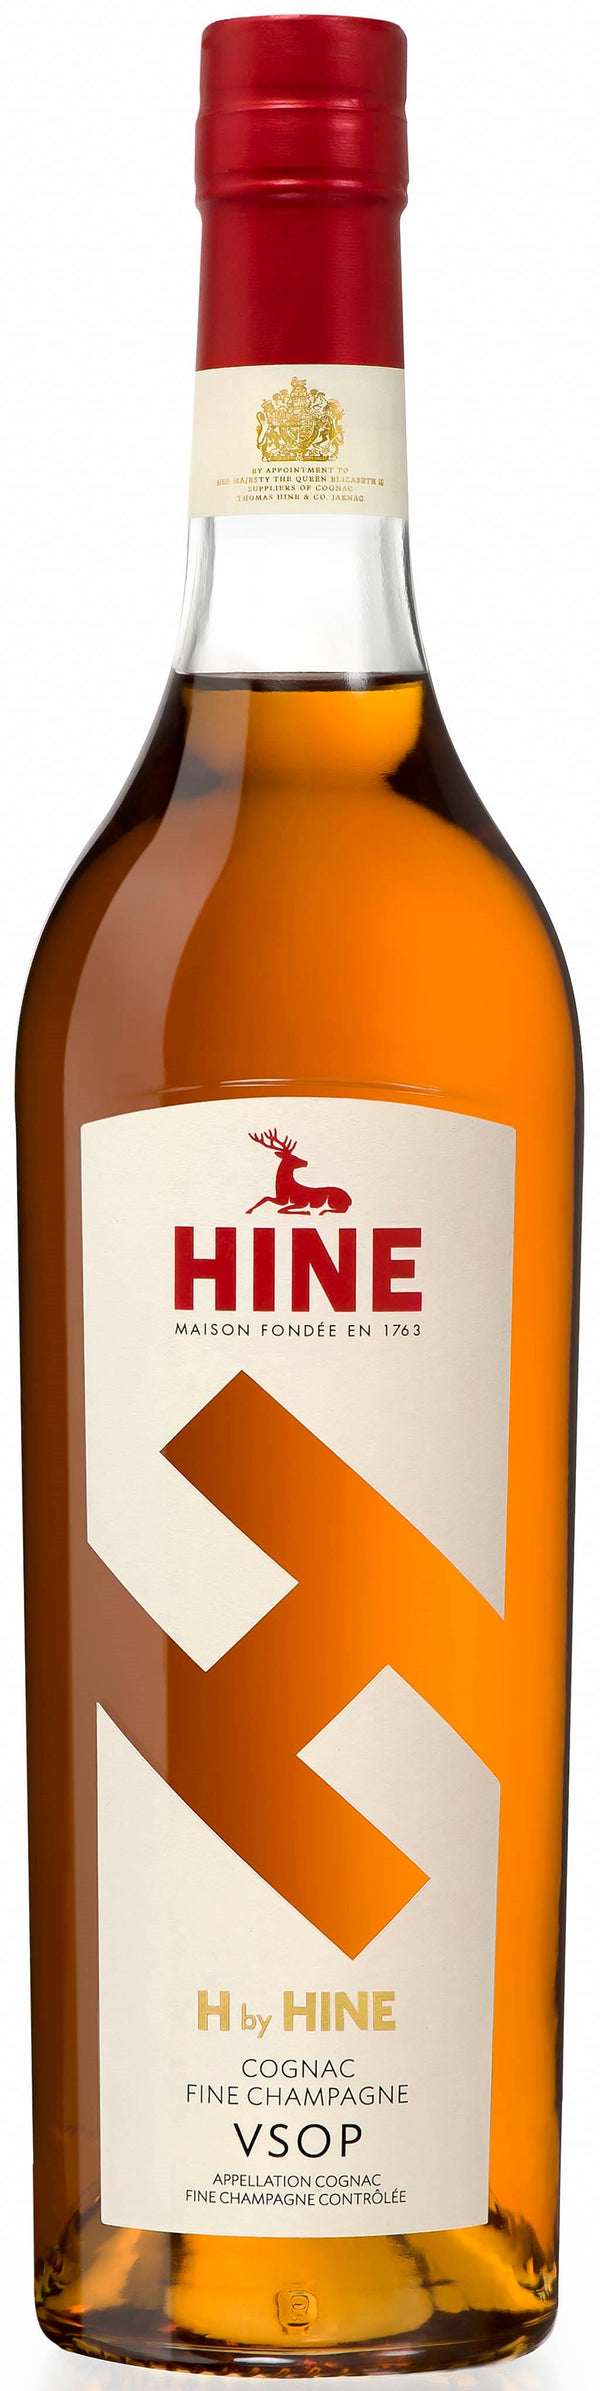 H by Hine VSOP Cognac 750ml